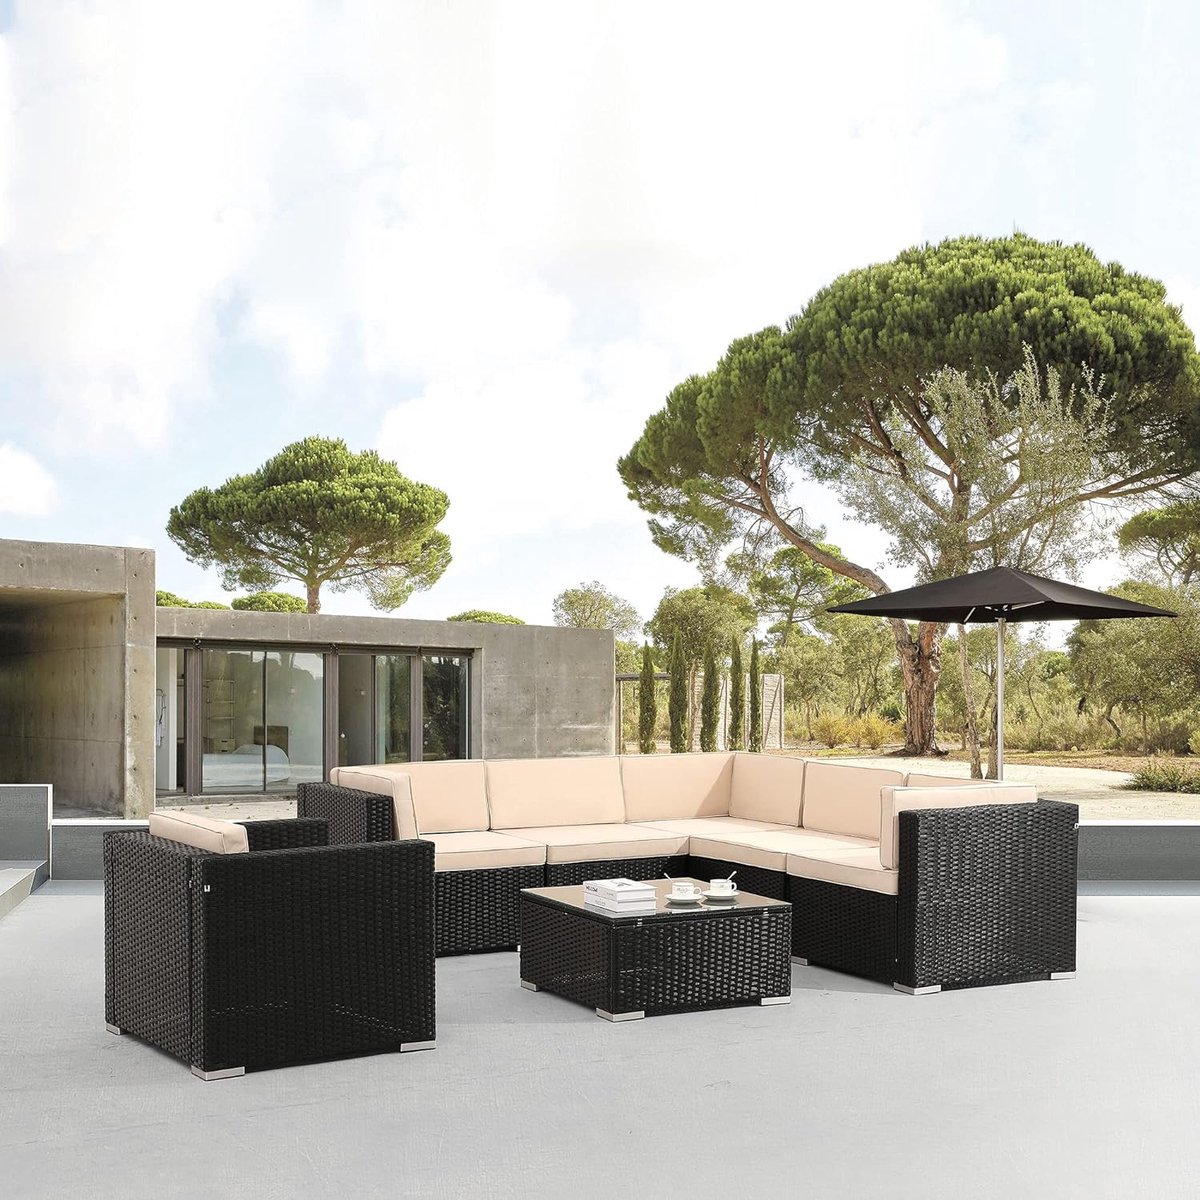 Arebos Poly rotan tuinmeubelen Lounge Porto | Incl. zitkussen | met stoel | 6 personen | UV-bestendig polyrotan vlechtwerk | tafel met glasplaat | vrij te combineren | zwart